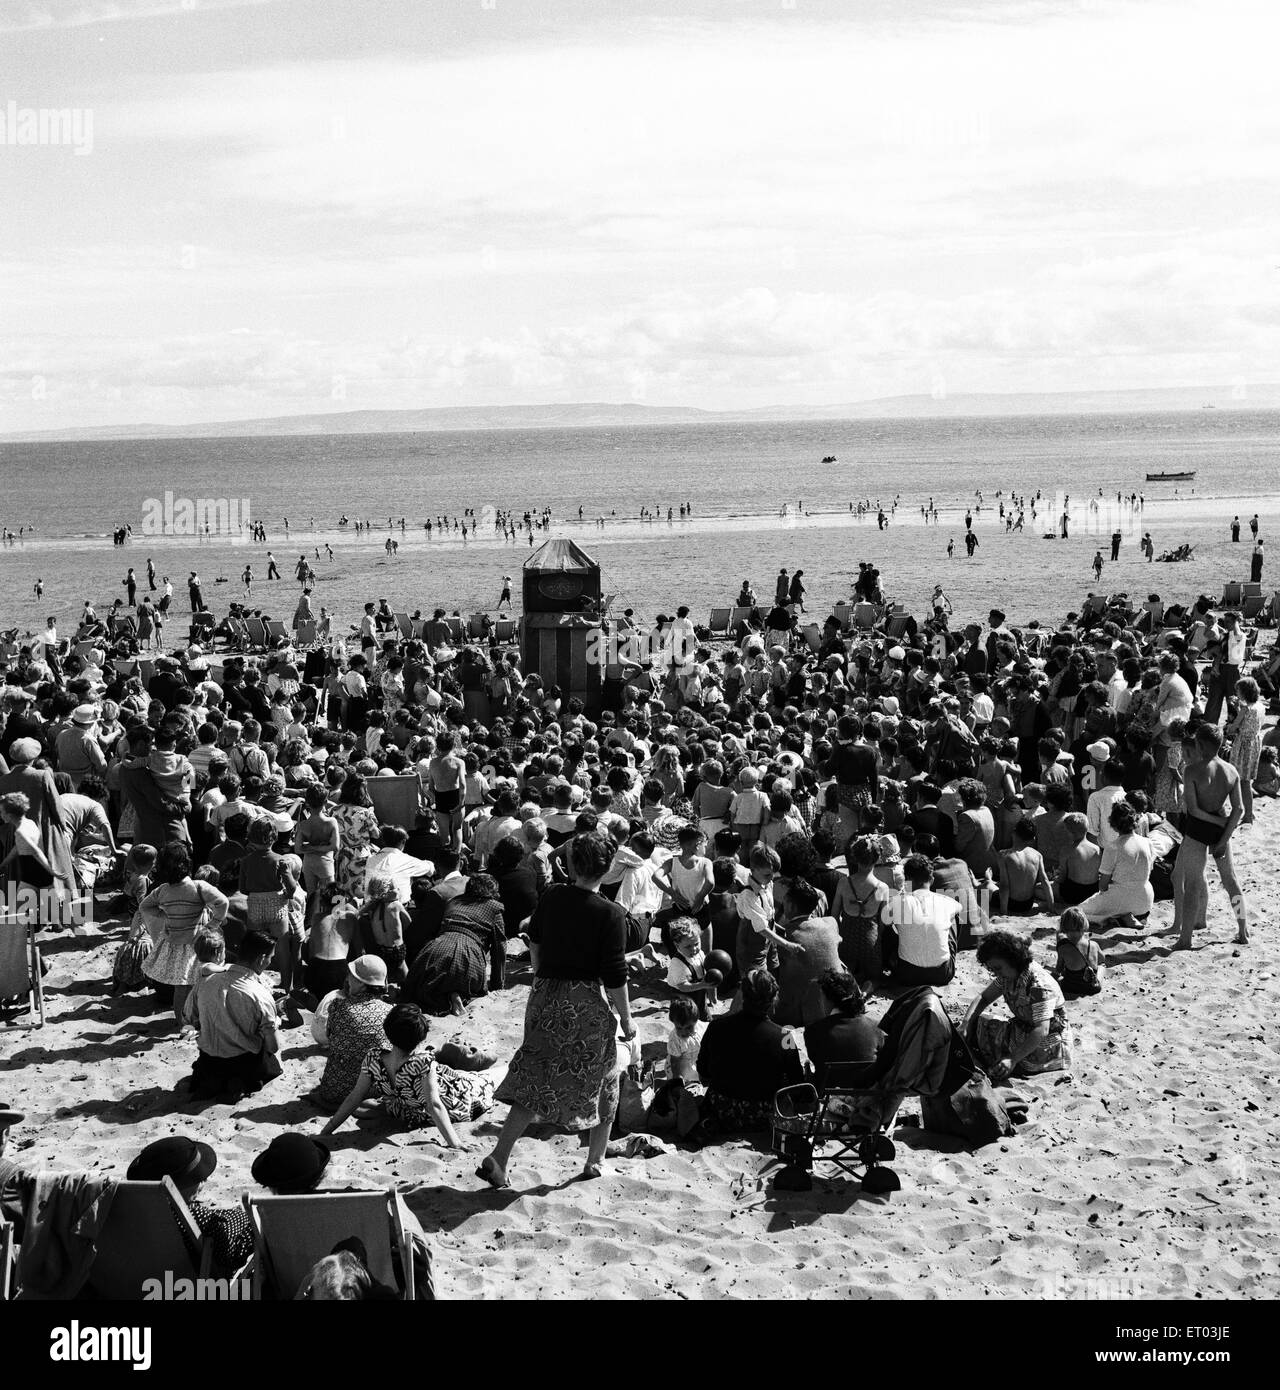 Maison de vacances la foule à l'île de Barry, Vale of Glamorgan, Pays de Galles du Sud. Août 1952. Banque D'Images